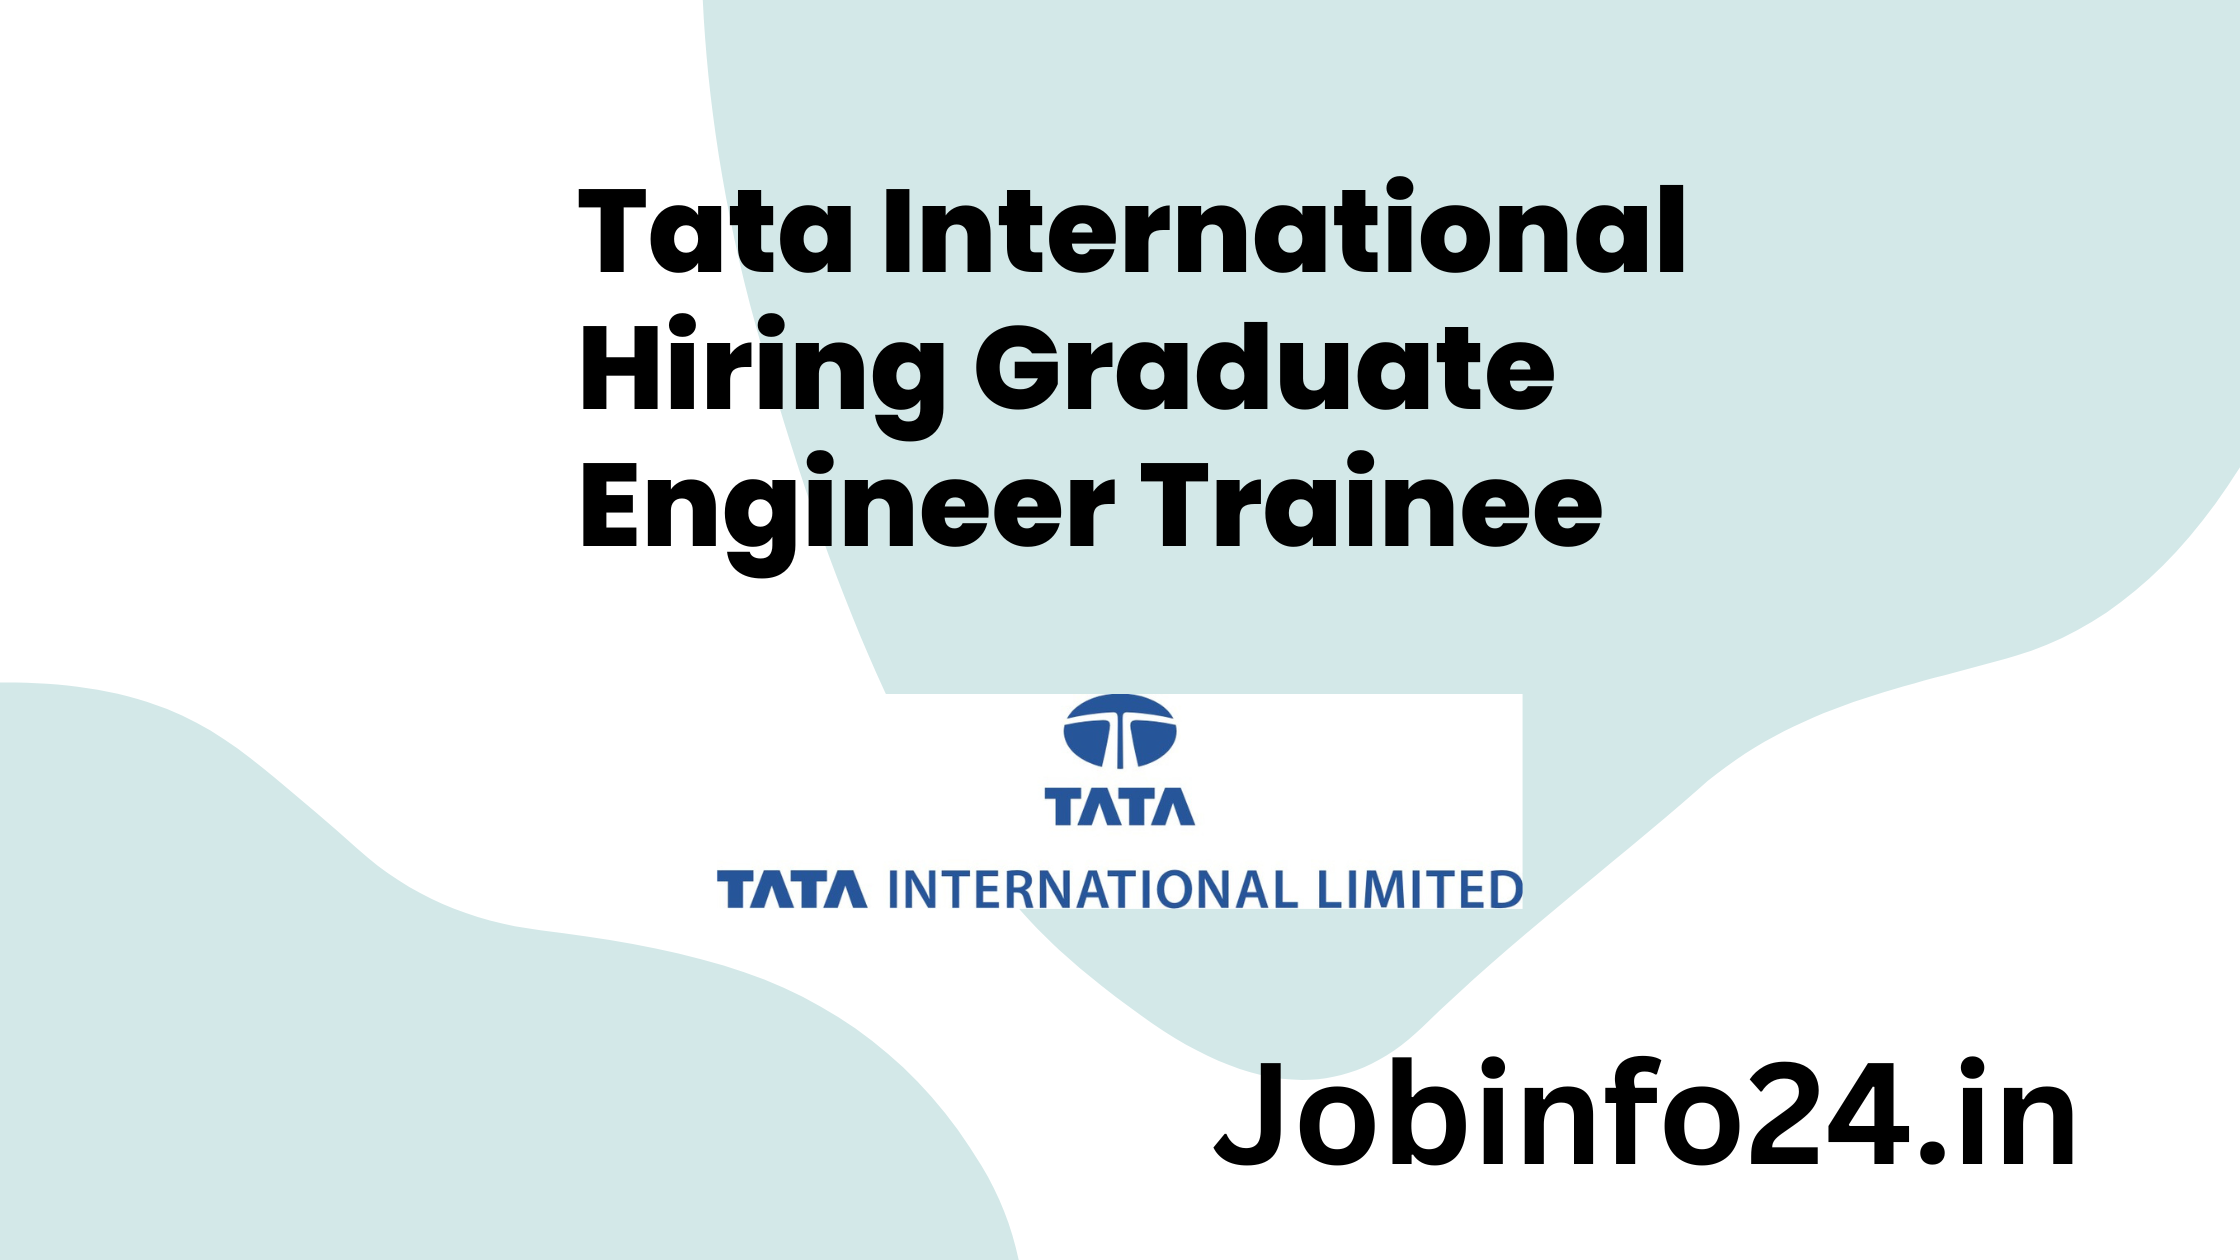 Tata International Hiring Graduate Engineer Trainee